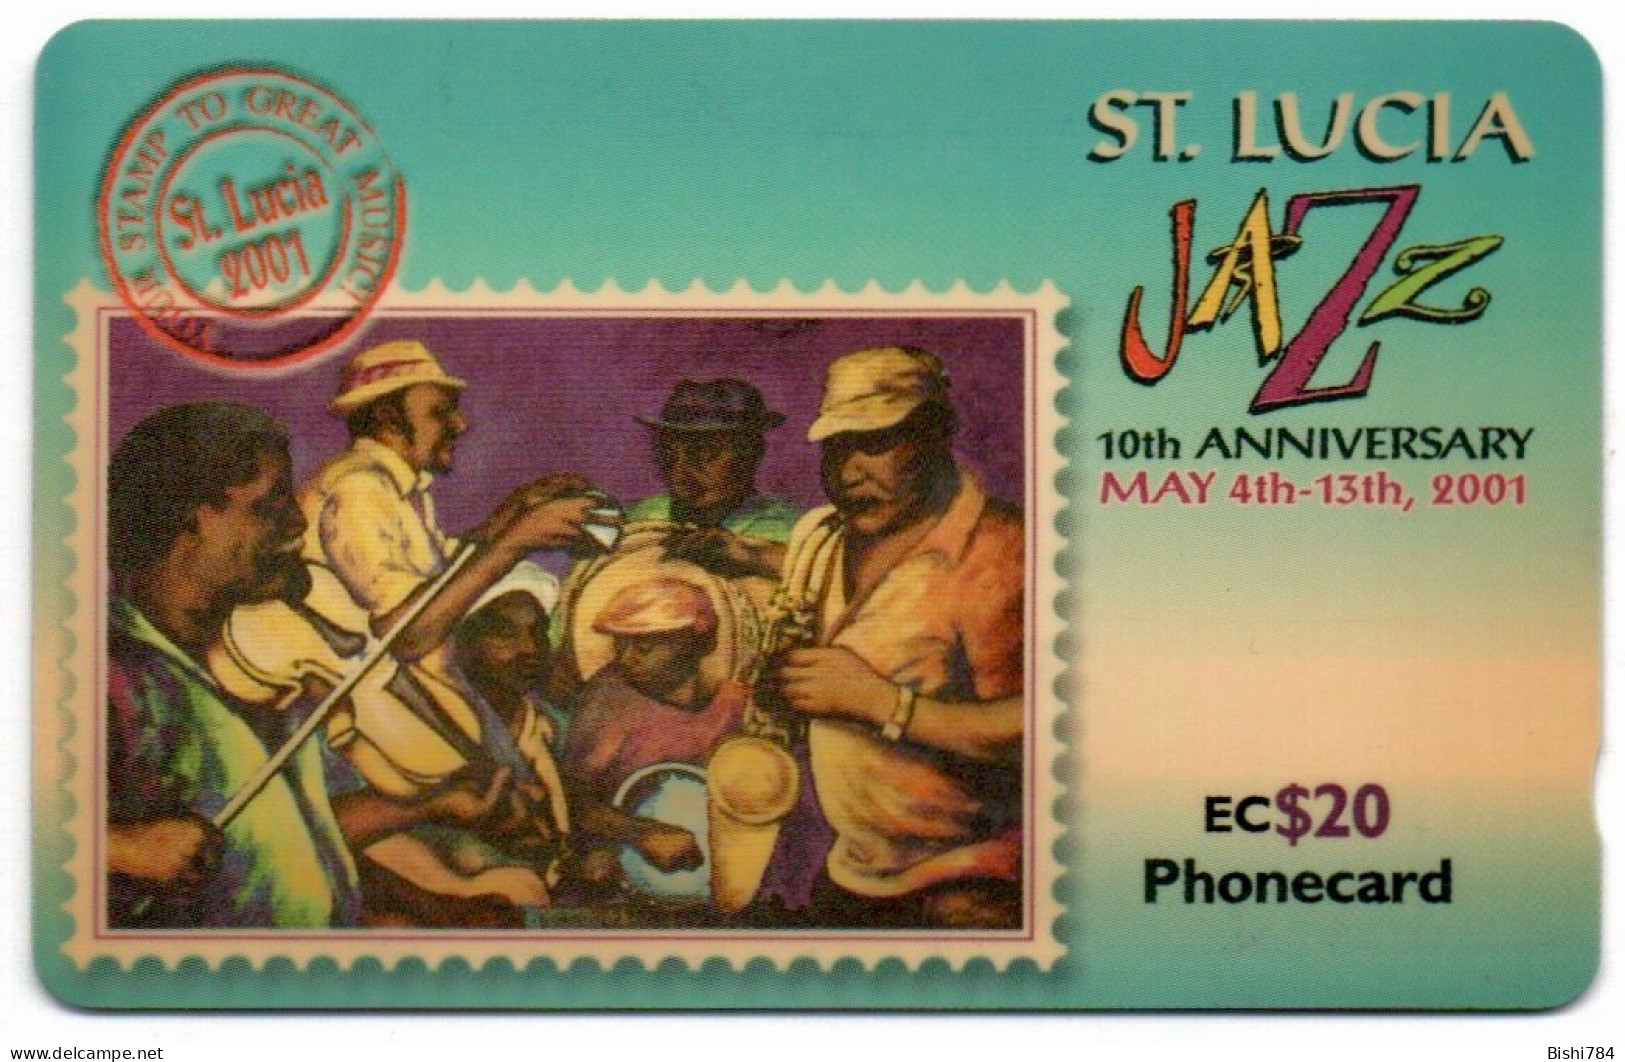 St. Lucia - Jazz Festival 2001 - 337CSLJ - St. Lucia